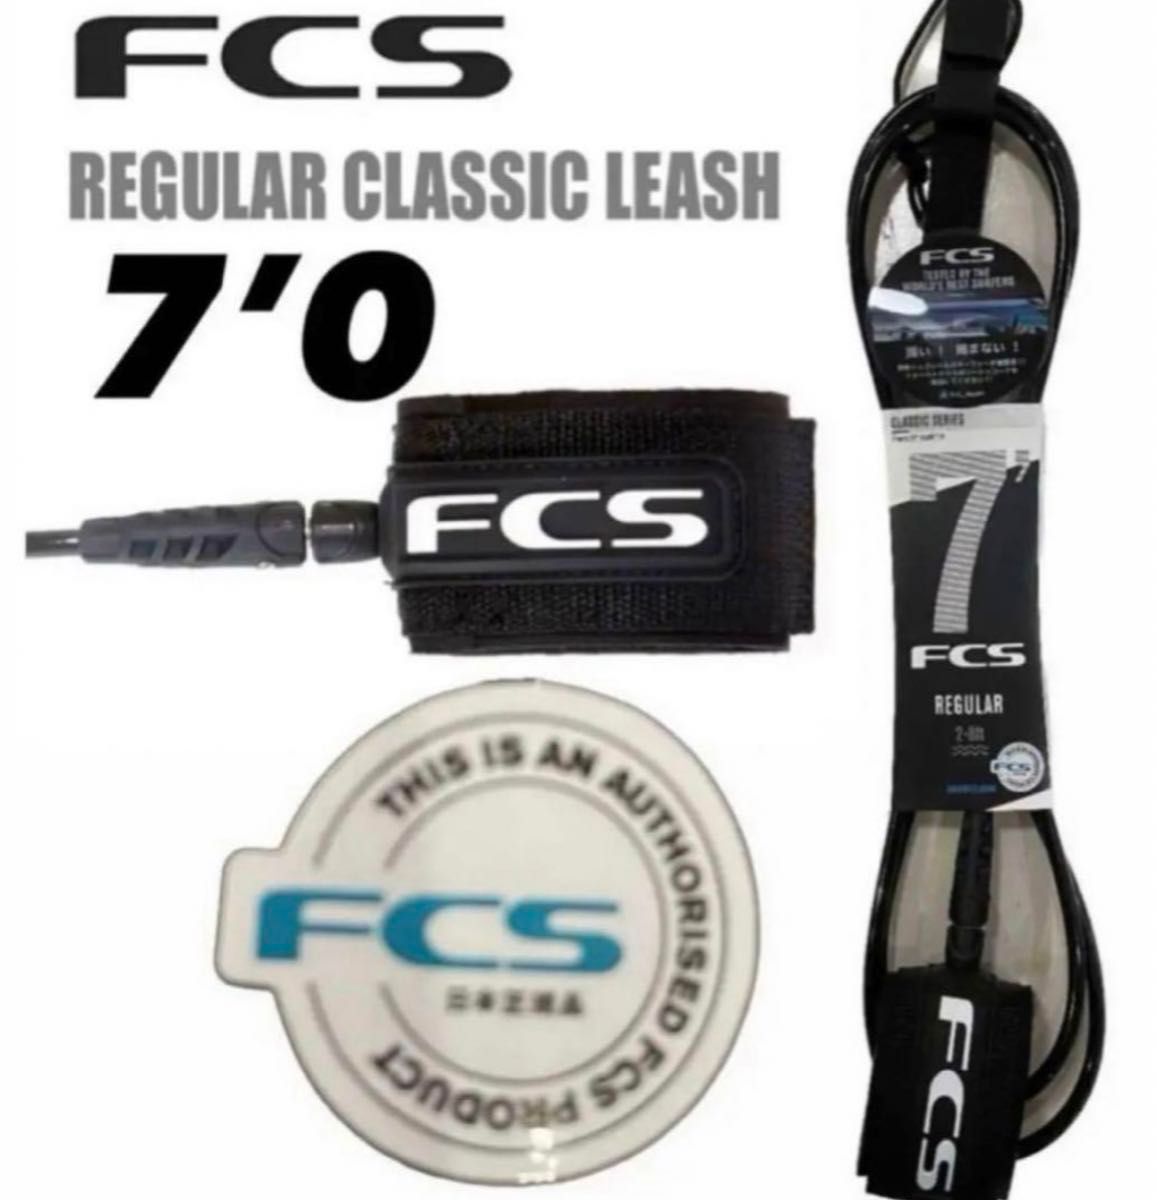 FCS 7‘0 CLASSICリーシュコード新品正規販売店購入品、期間限定価格